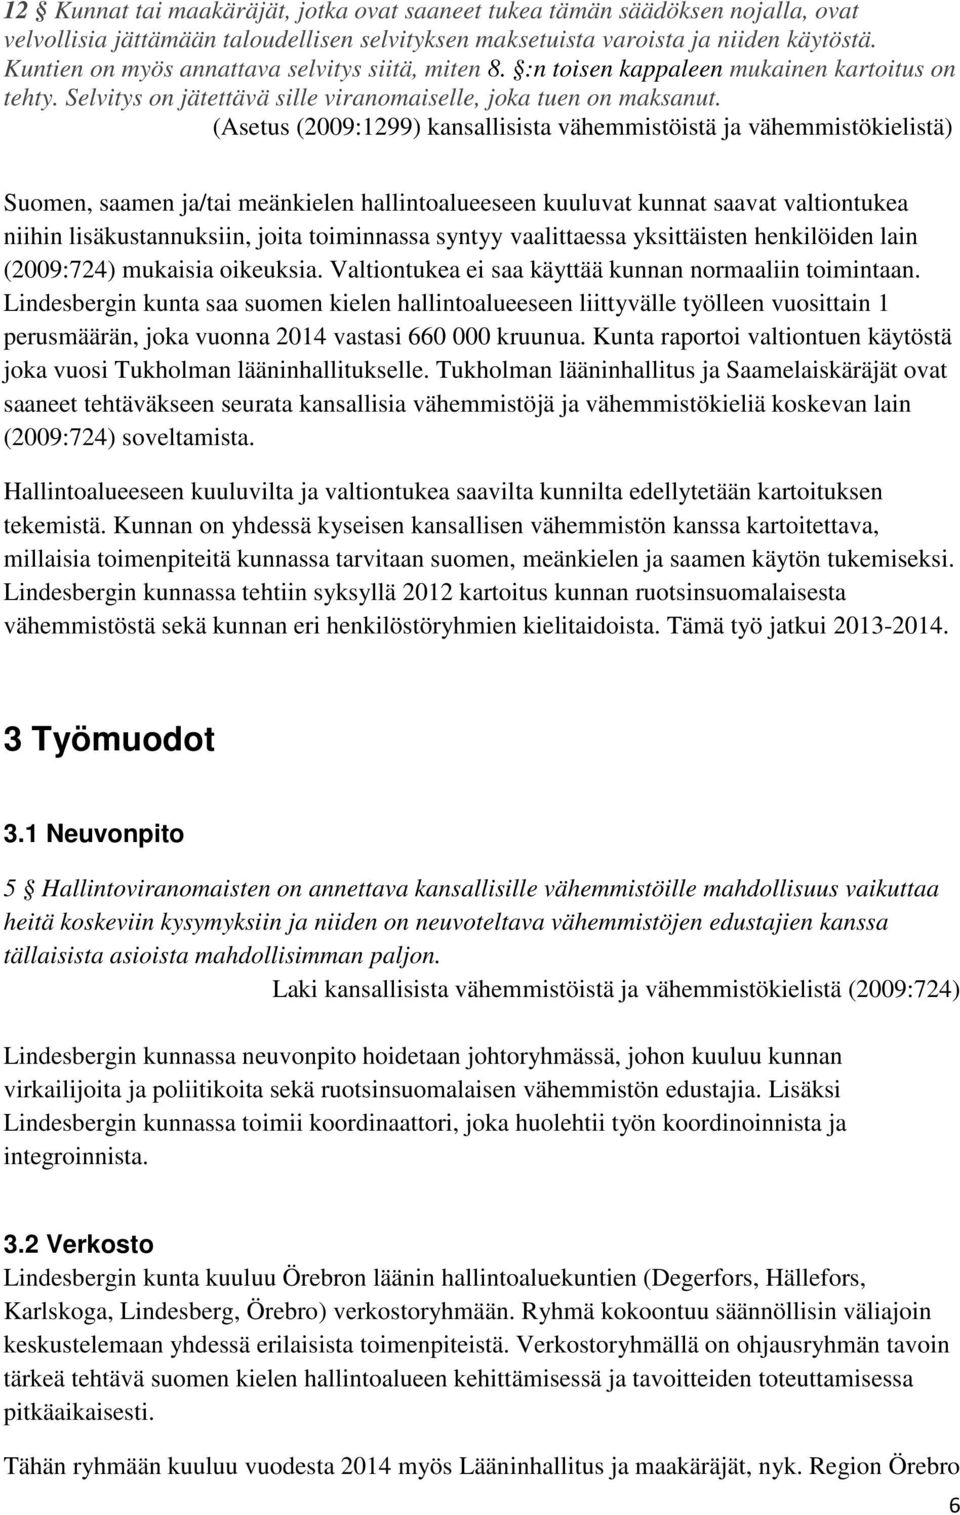 (Asetus (2009:1299) kansallisista vähemmistöistä ja vähemmistökielistä) Suomen, saamen ja/tai meänkielen hallintoalueeseen kuuluvat kunnat saavat valtiontukea niihin lisäkustannuksiin, joita